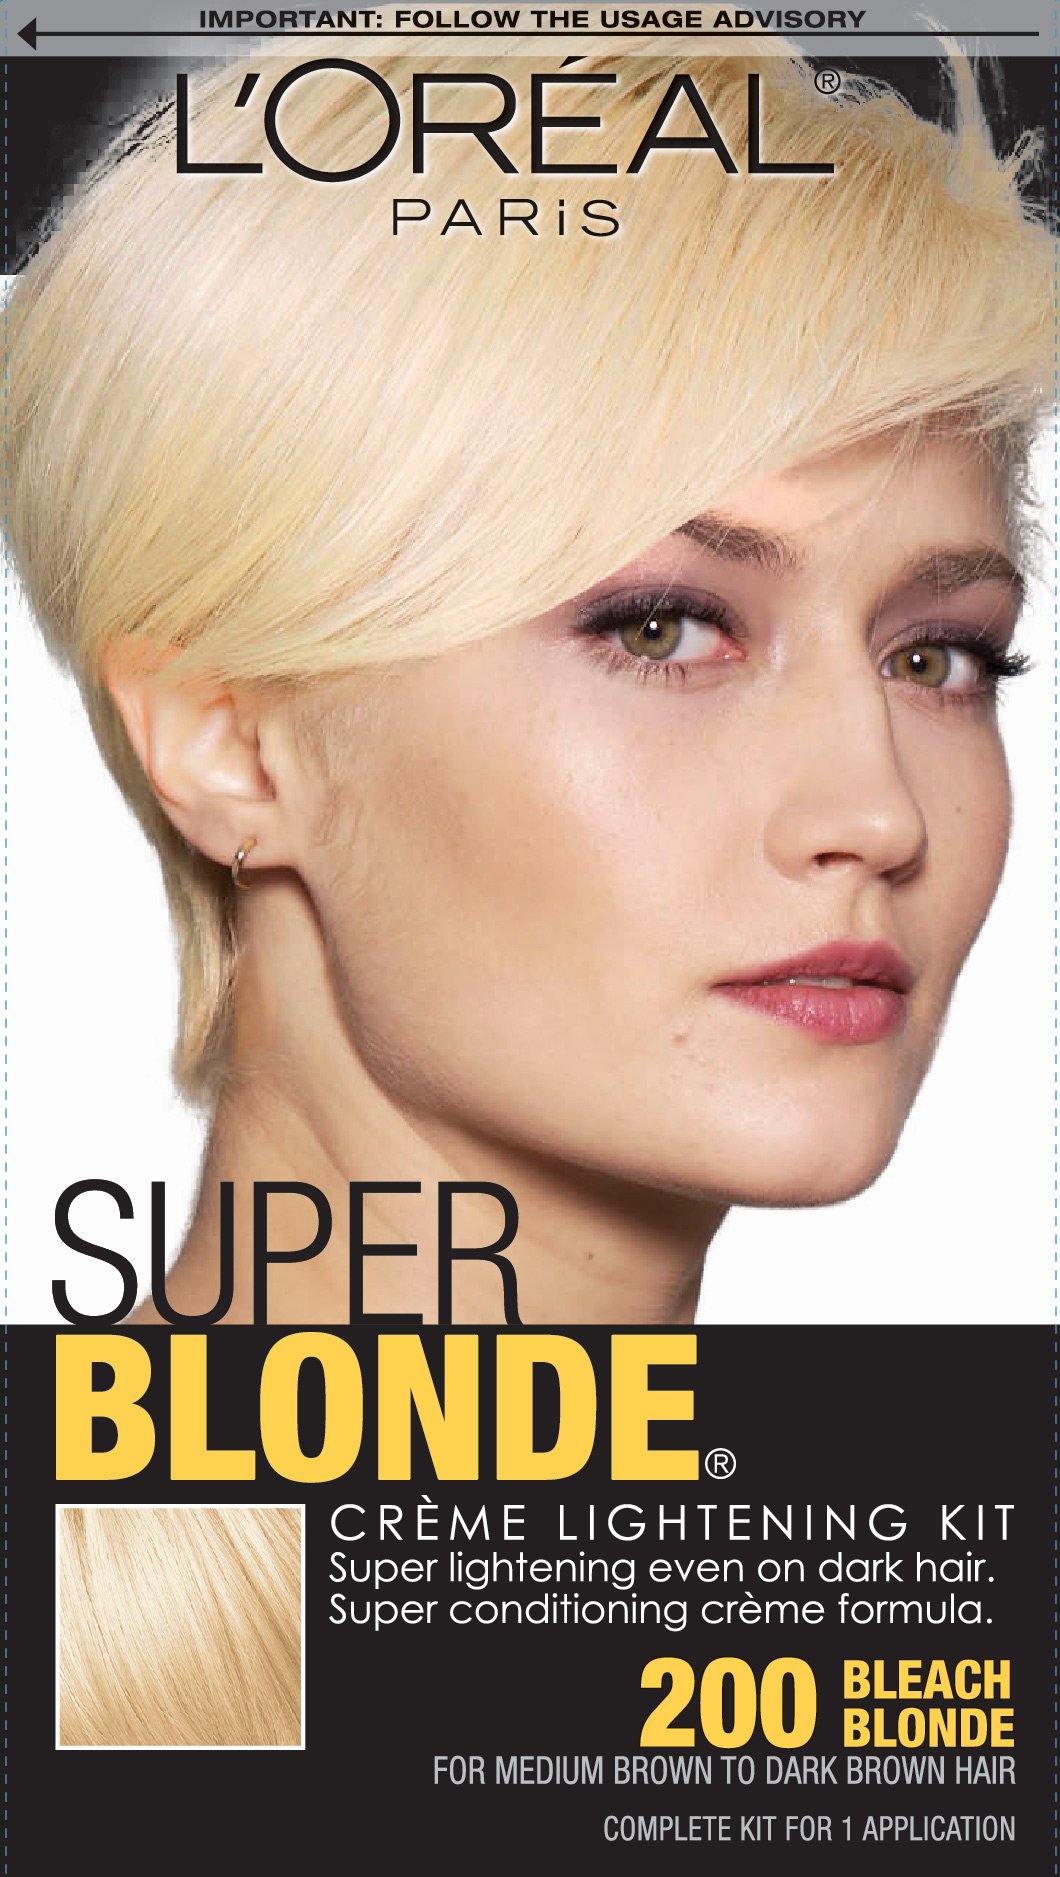 At-Home Professional Hair Bleach To Lighten Hair - L'Oréal Paris